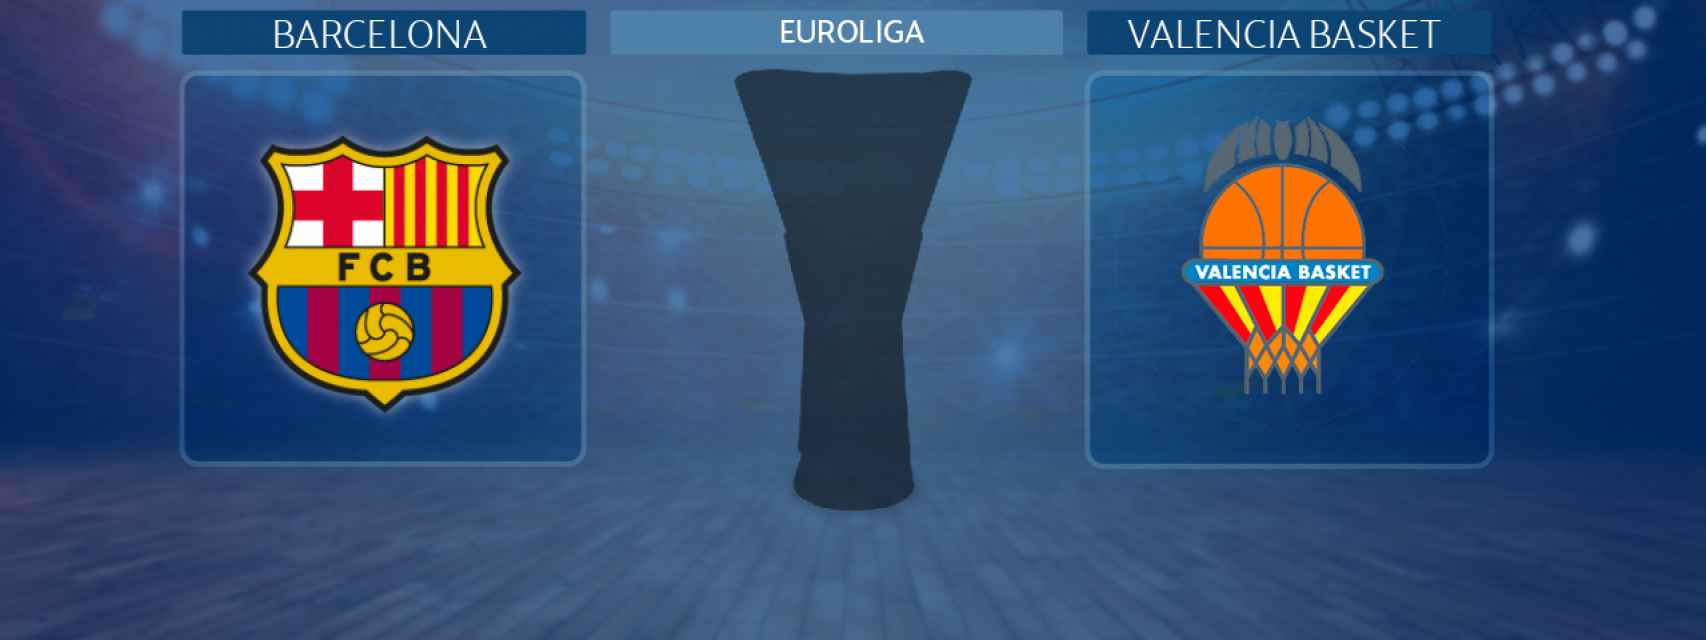 Barcelona - Valencia Basket, partido de la Euroliga